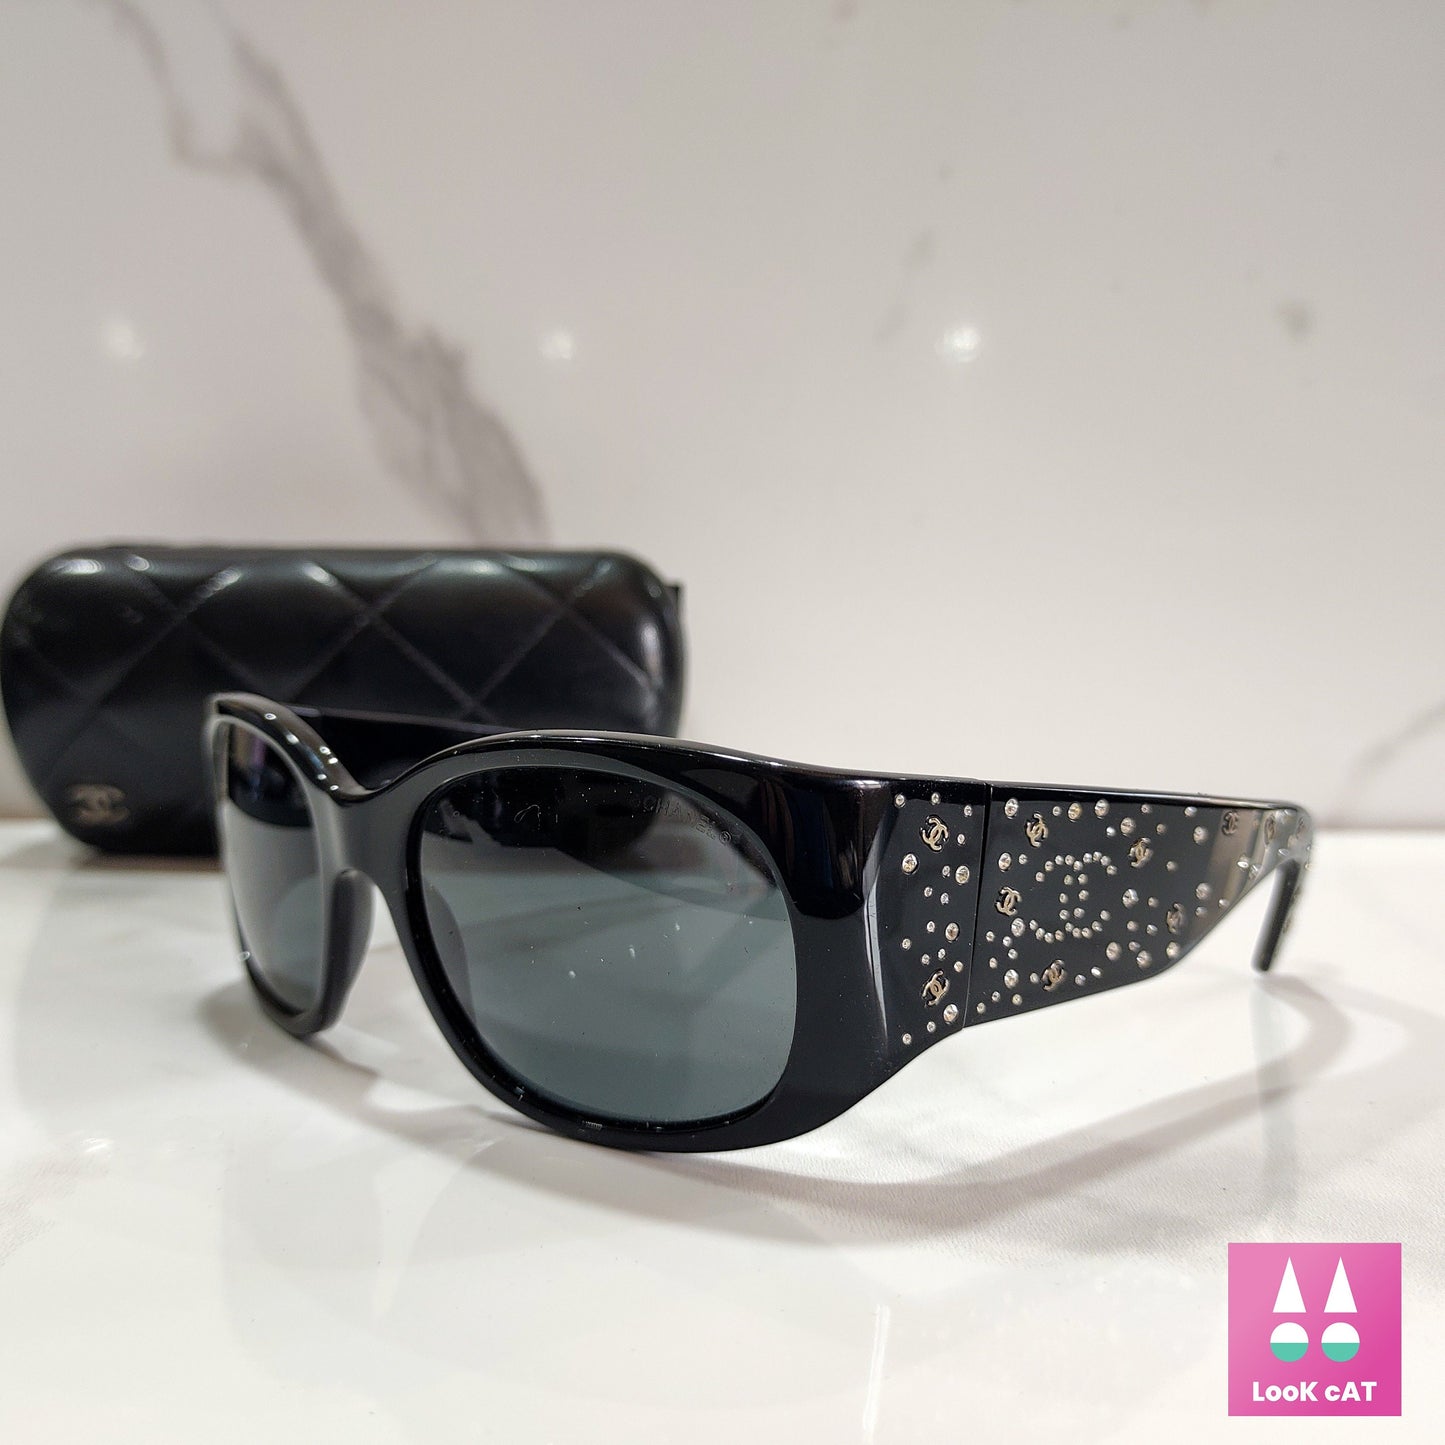 Chanel sunglasses model 5134 glitter lunette shades 90s – LookcatSunglasses